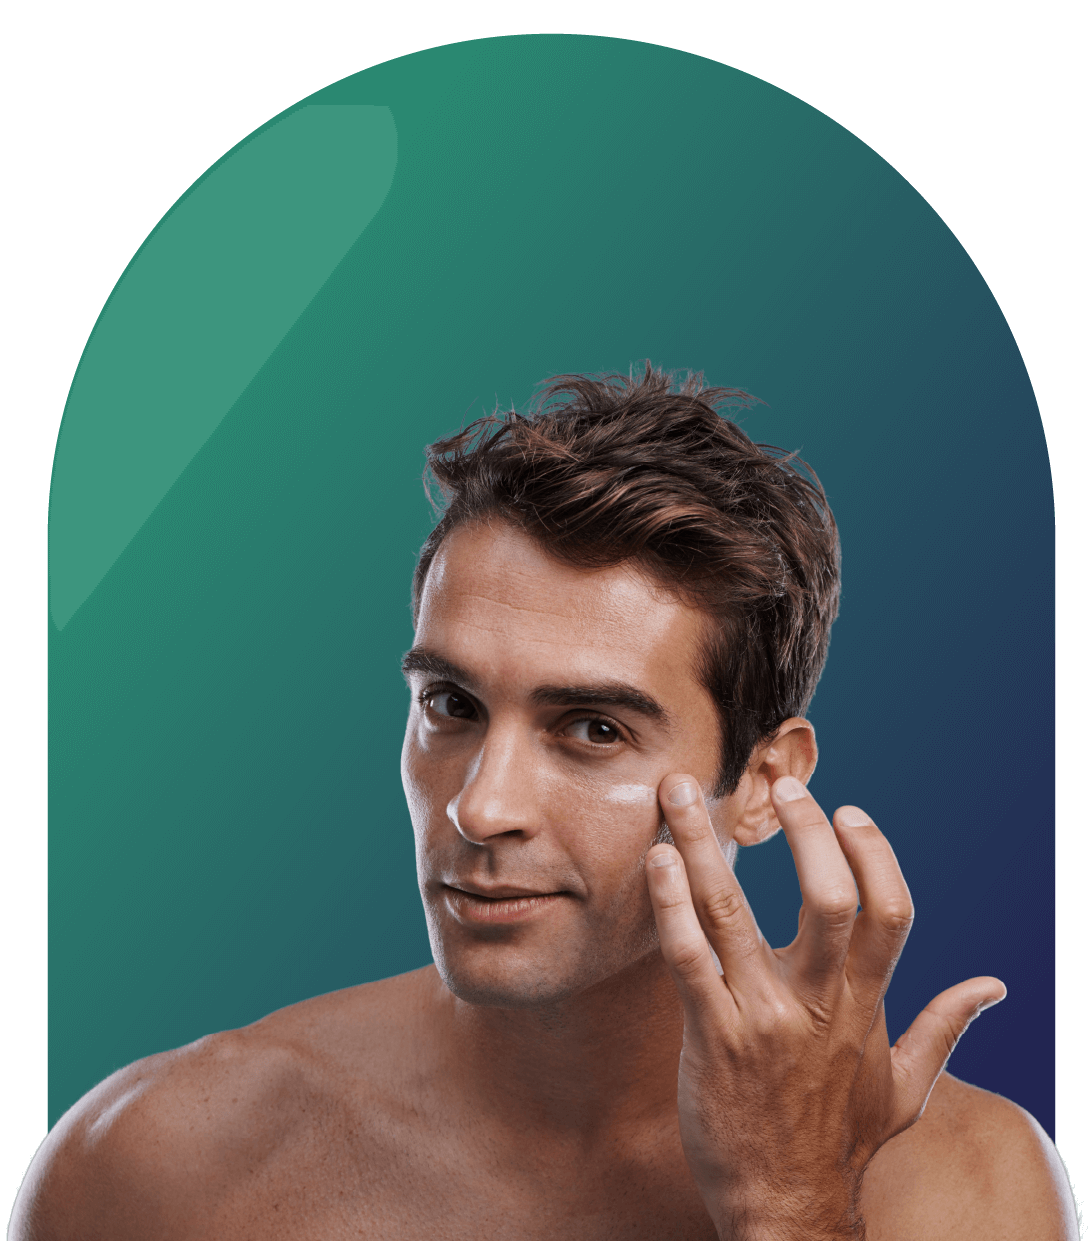 Skin treatment for men